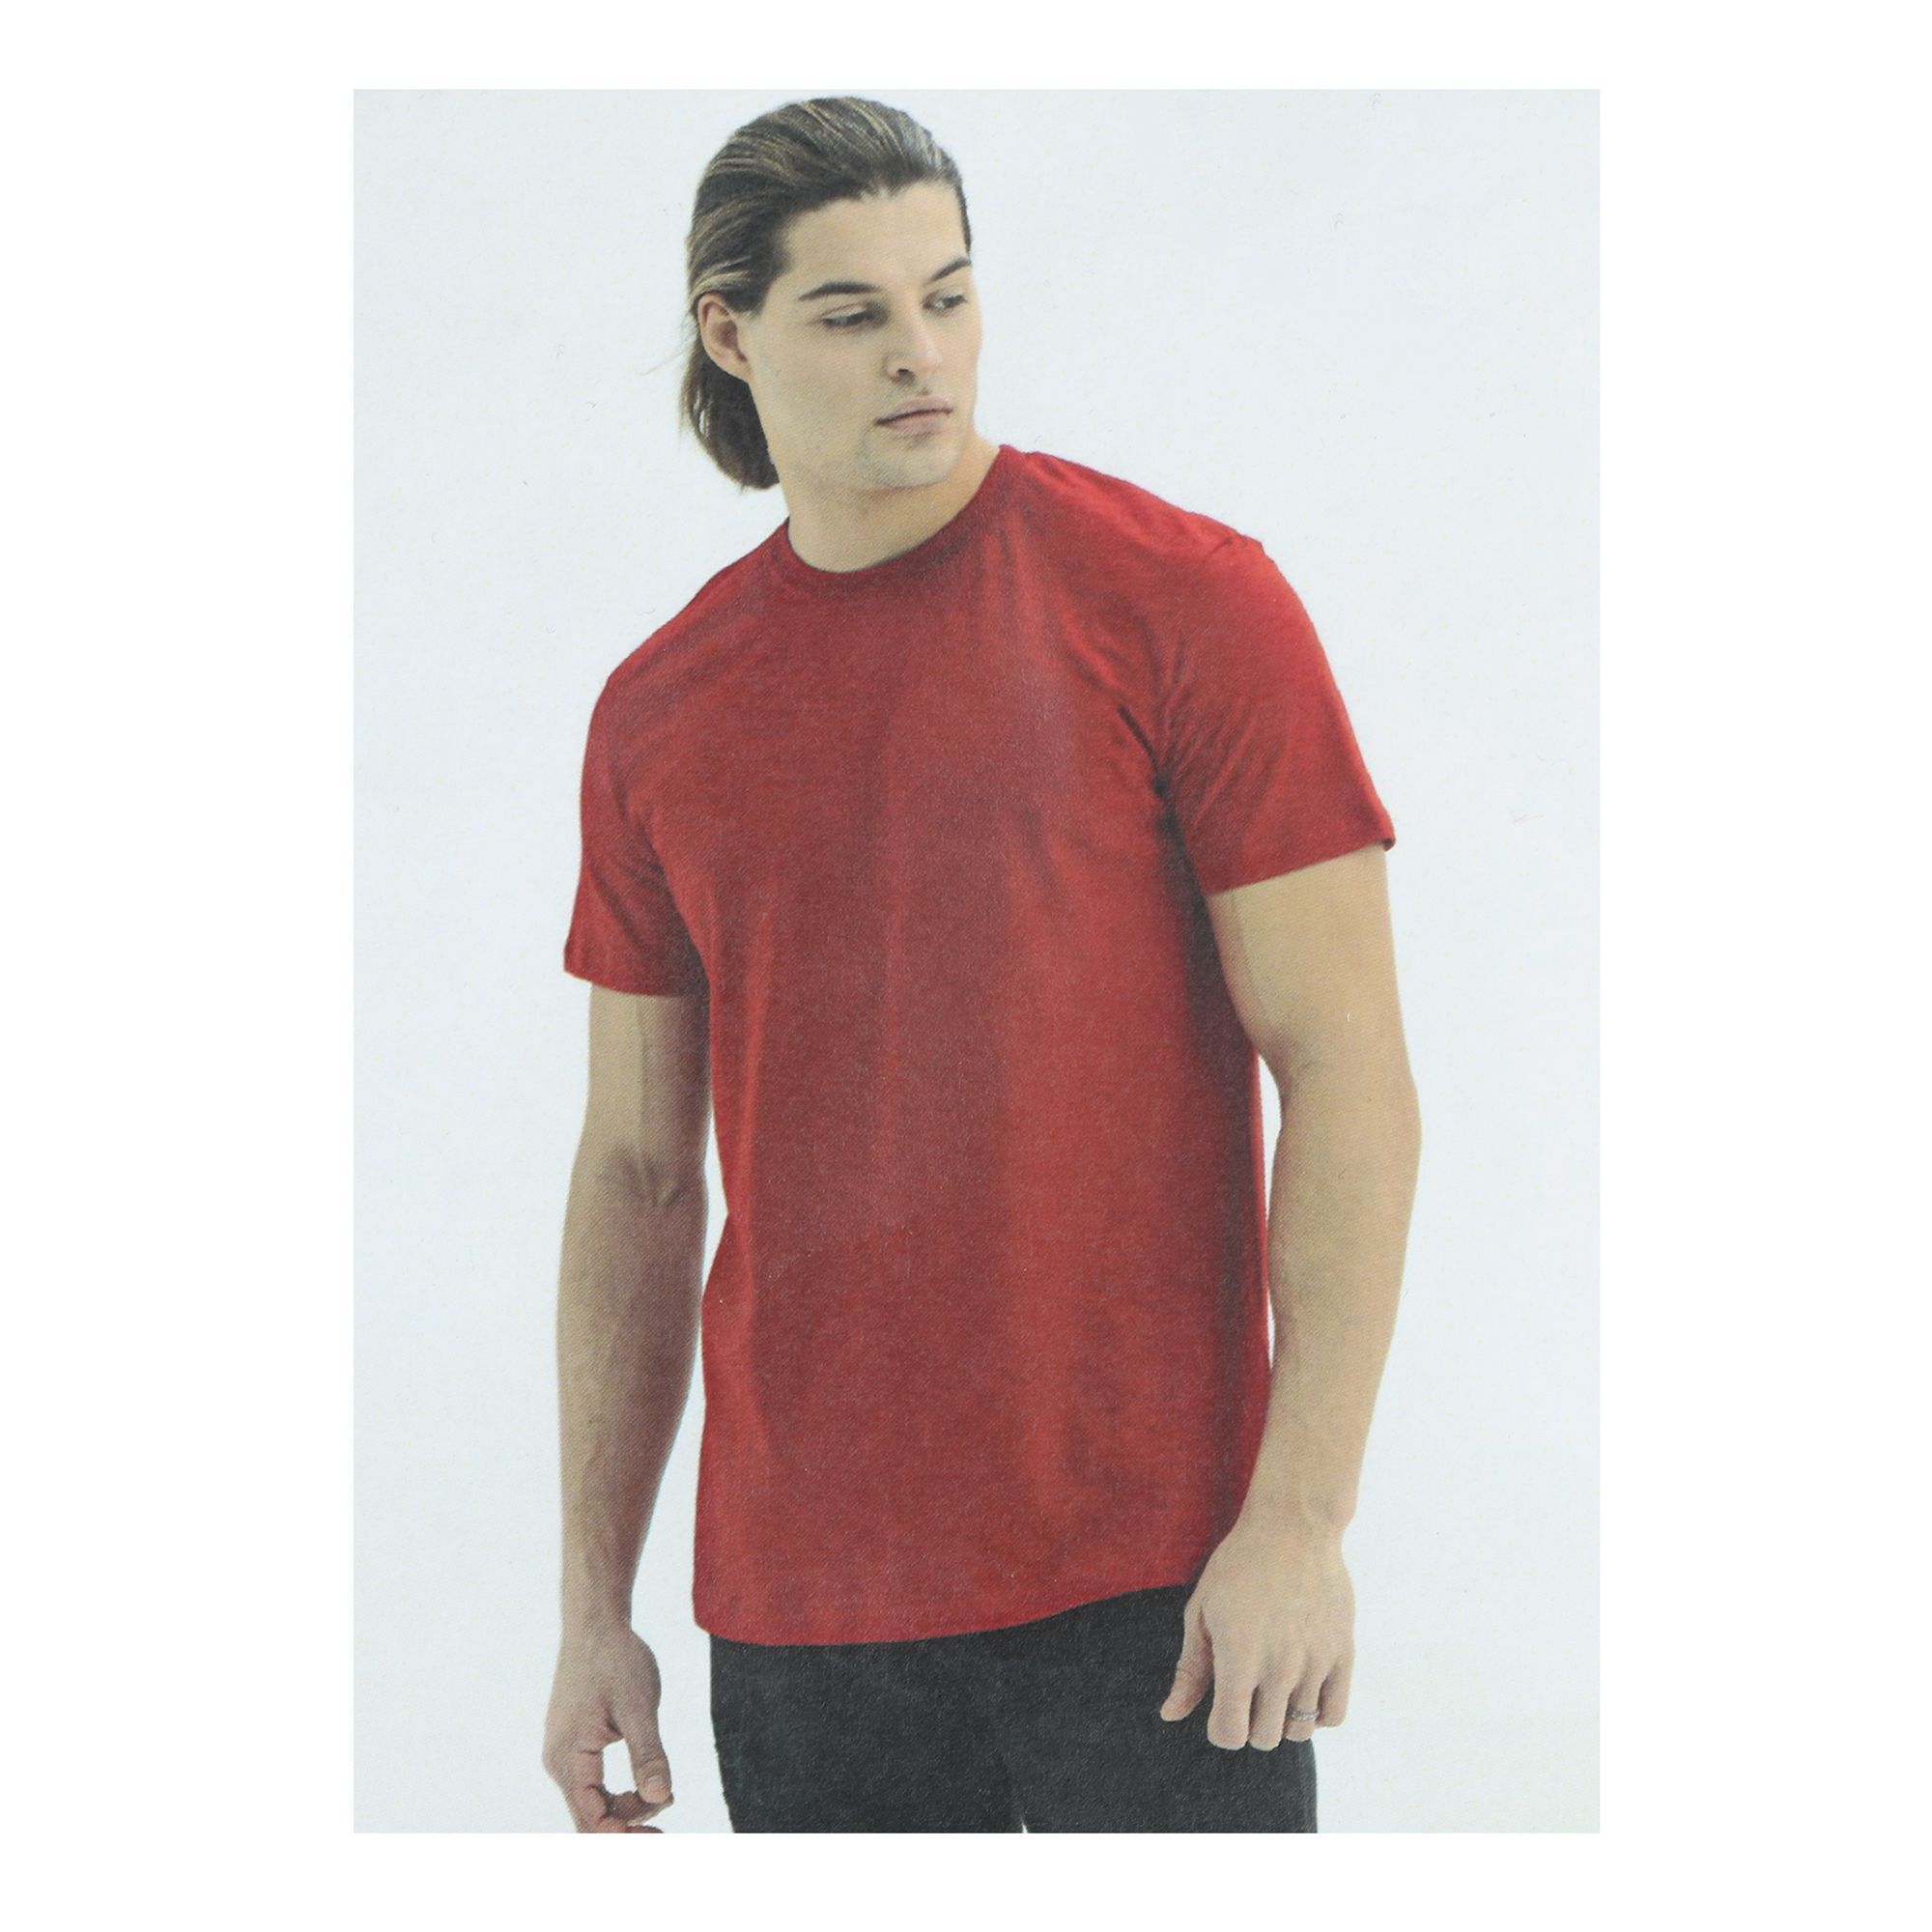 Мужская футболка Pantelemone MF-913 50 красная, цвет красный, размер 50 - фото 5